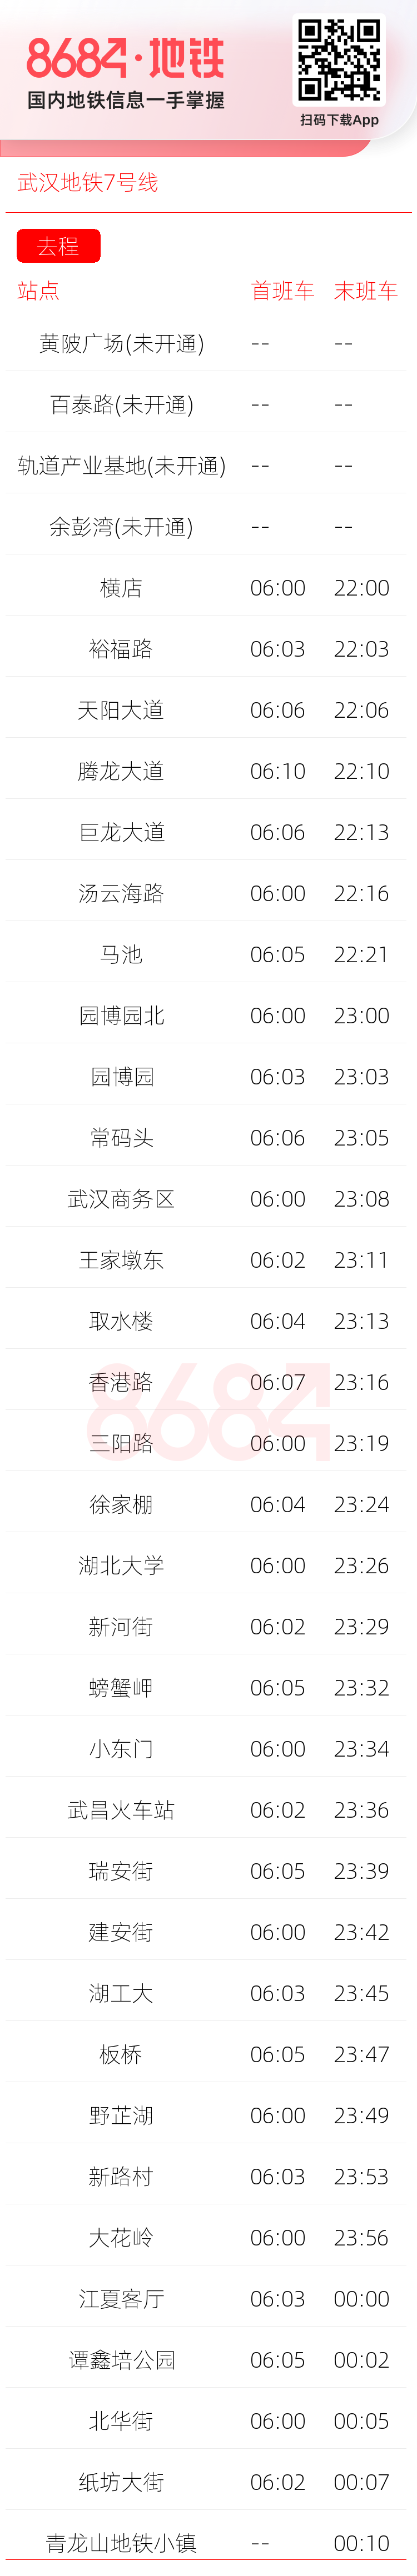 武汉地铁7号线运营时间表